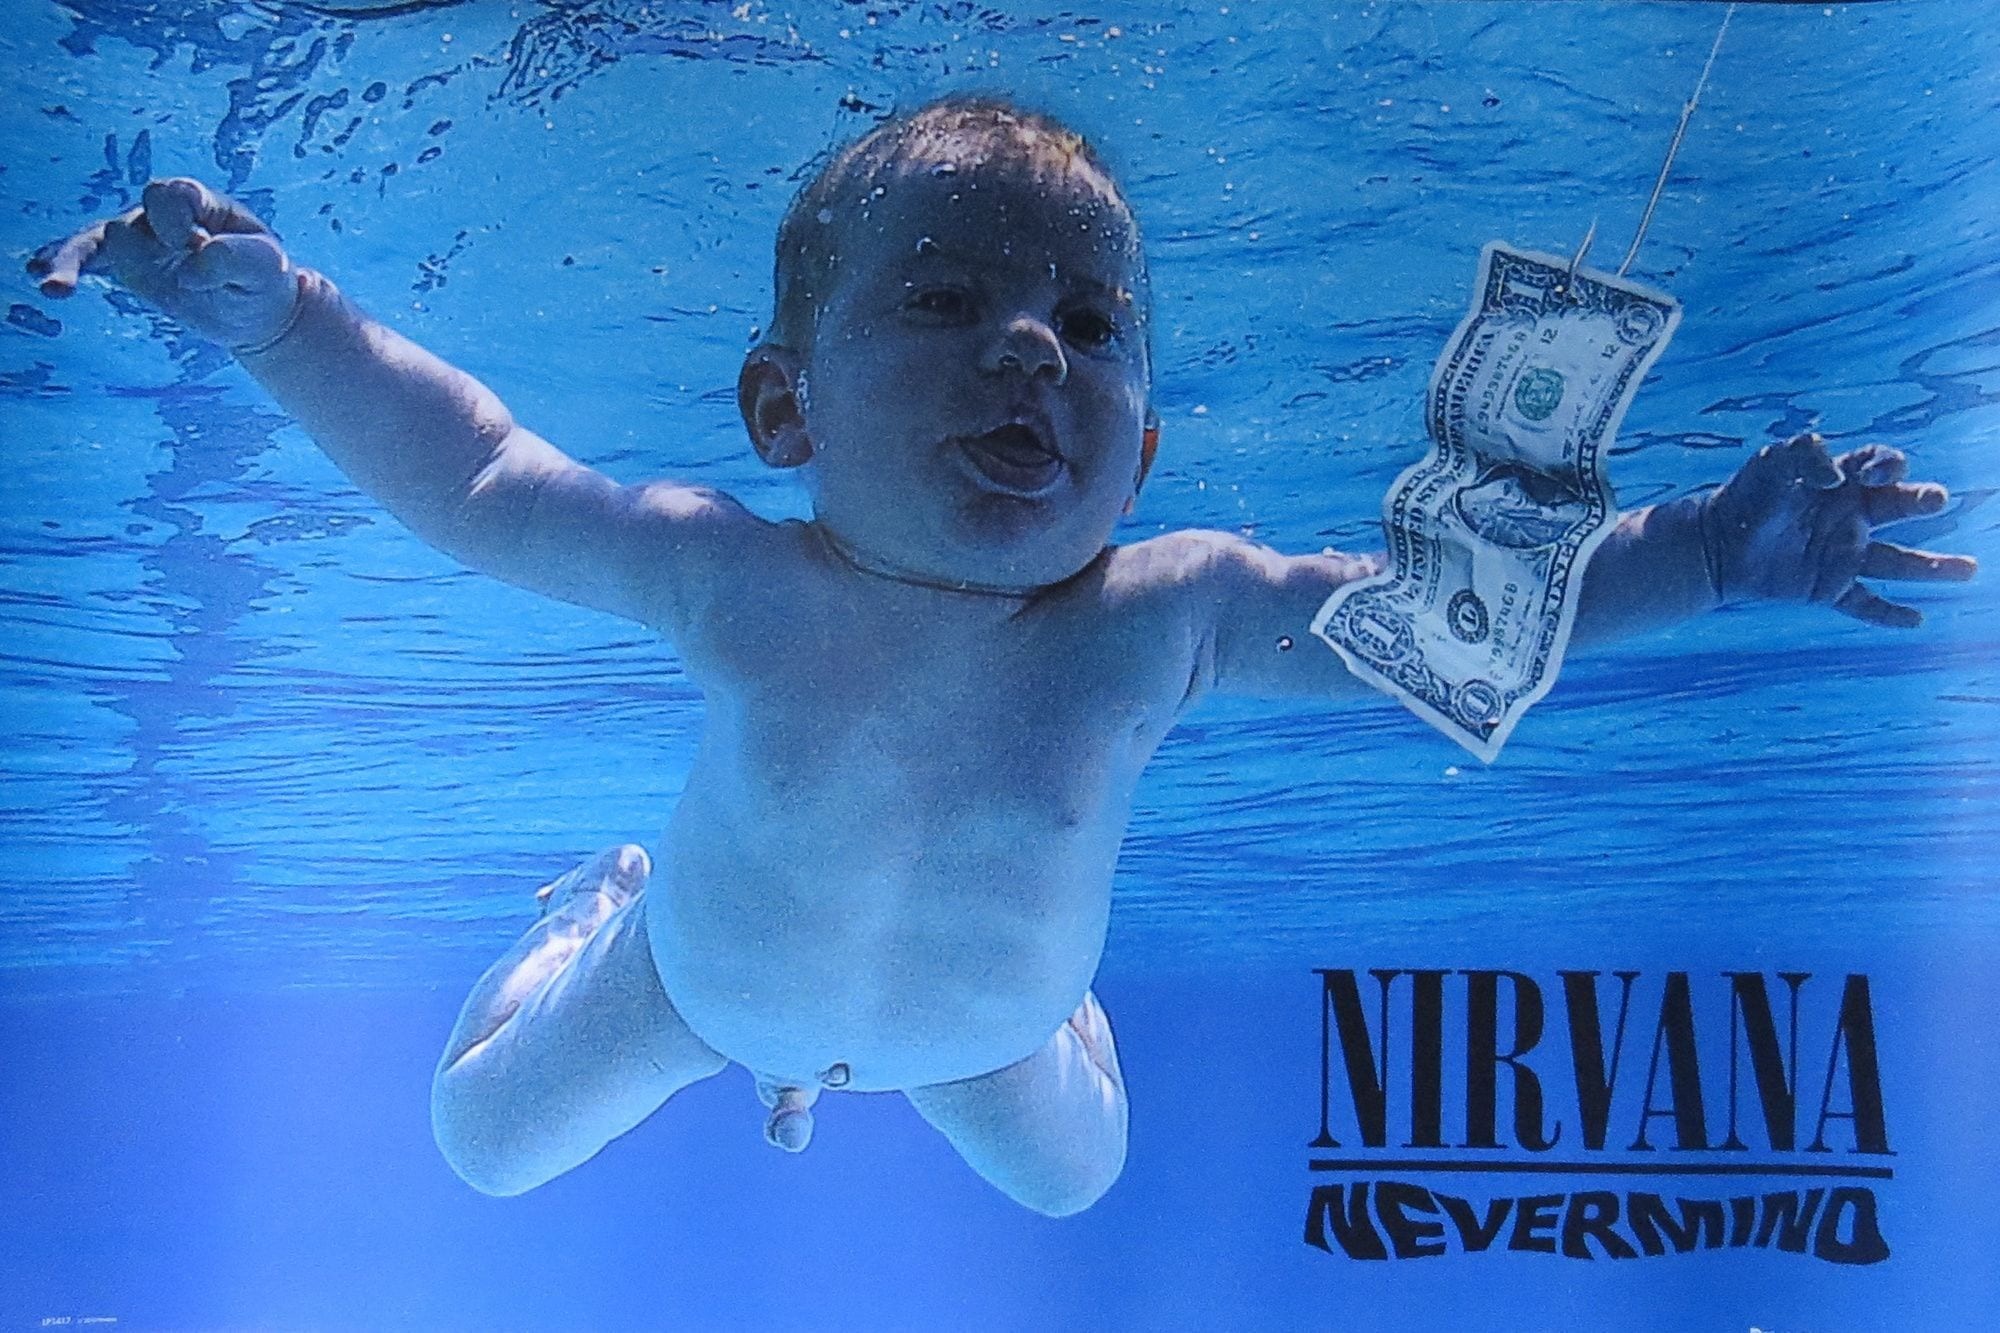 Nirvana Bị Kiện Bởi Đứa Trẻ Trên Ảnh Bìa Album “Nevermind” Với Cáo Buộc Về Nội Dung Khiêu Dâm Trẻ Em